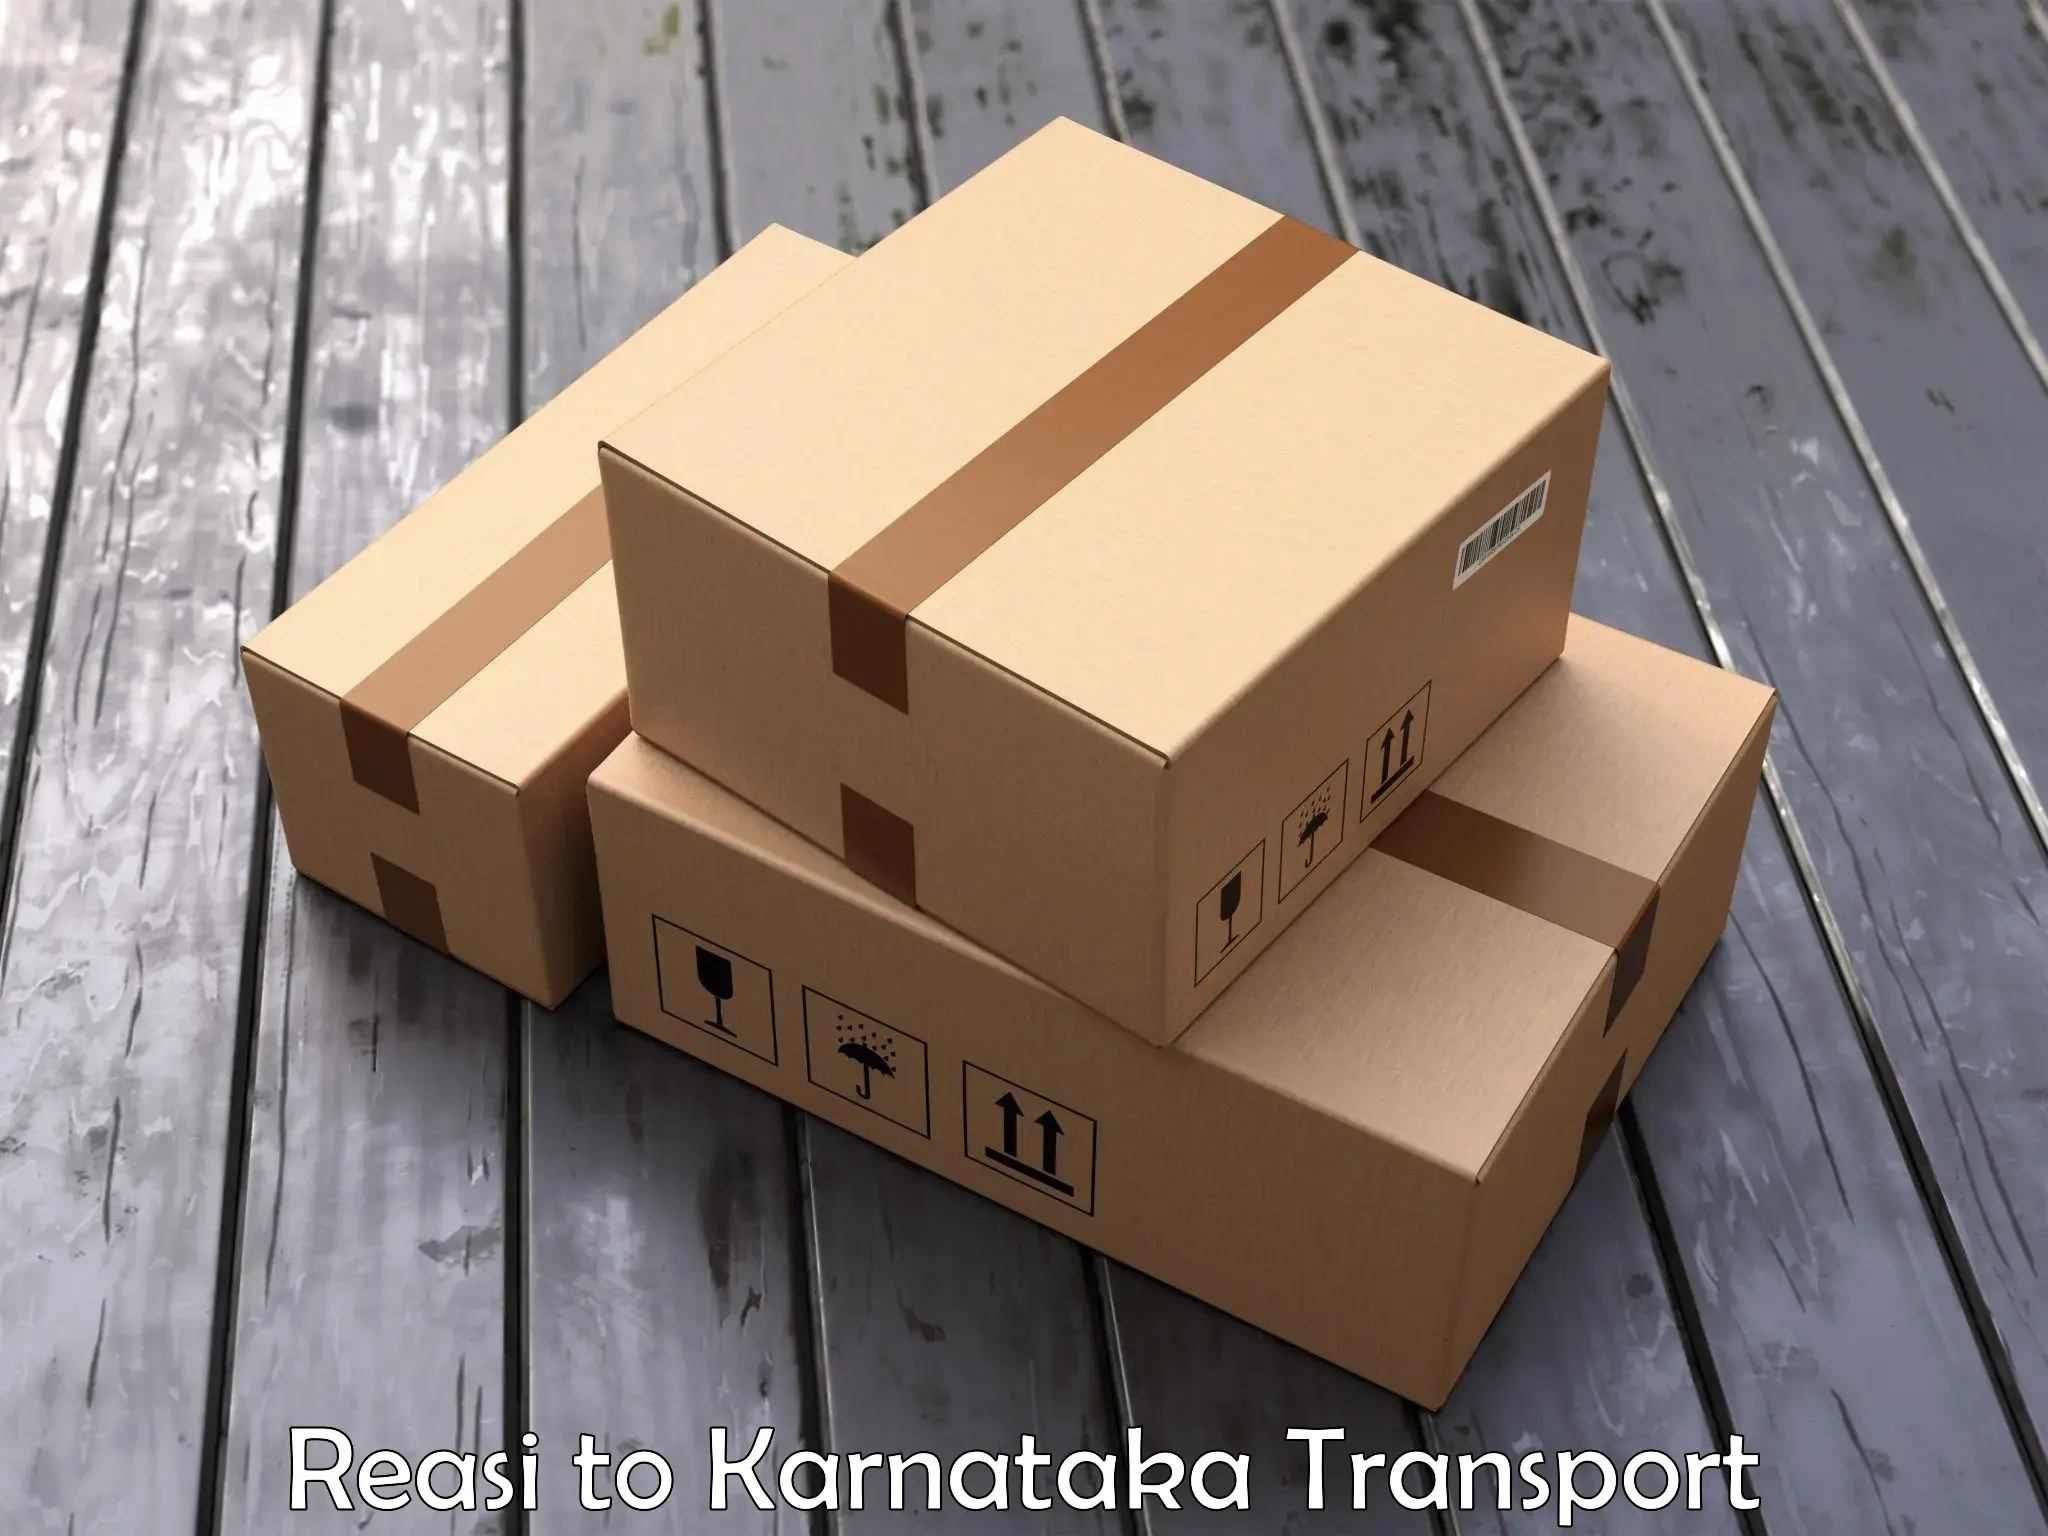 Daily transport service Reasi to Kanjarakatte